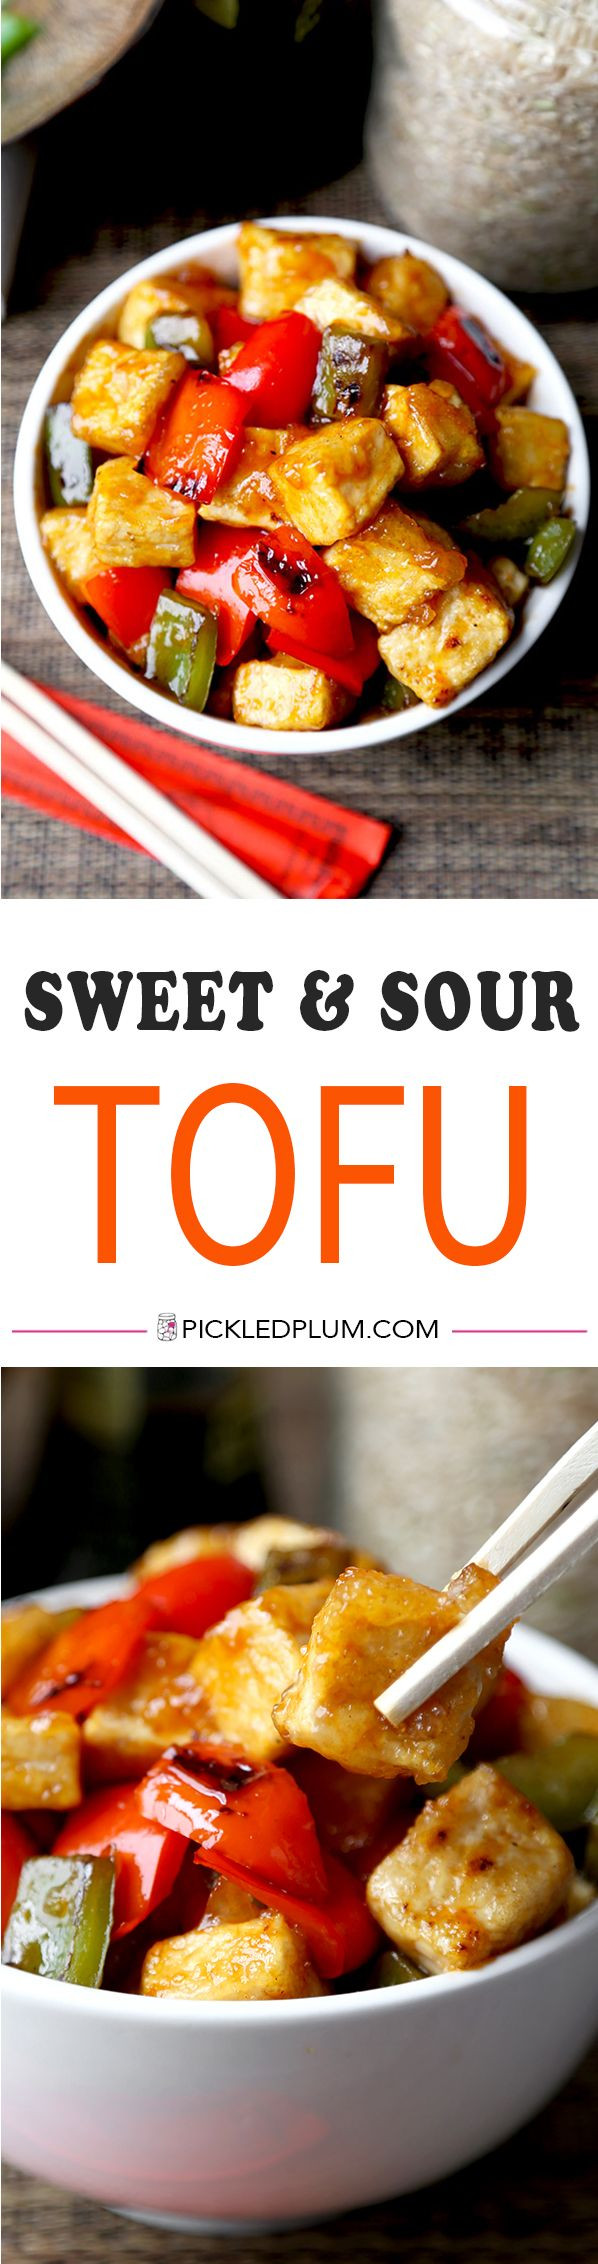 Sweet Tofu Recipes
 Vegan Sweet and Sour Tofu Recipe